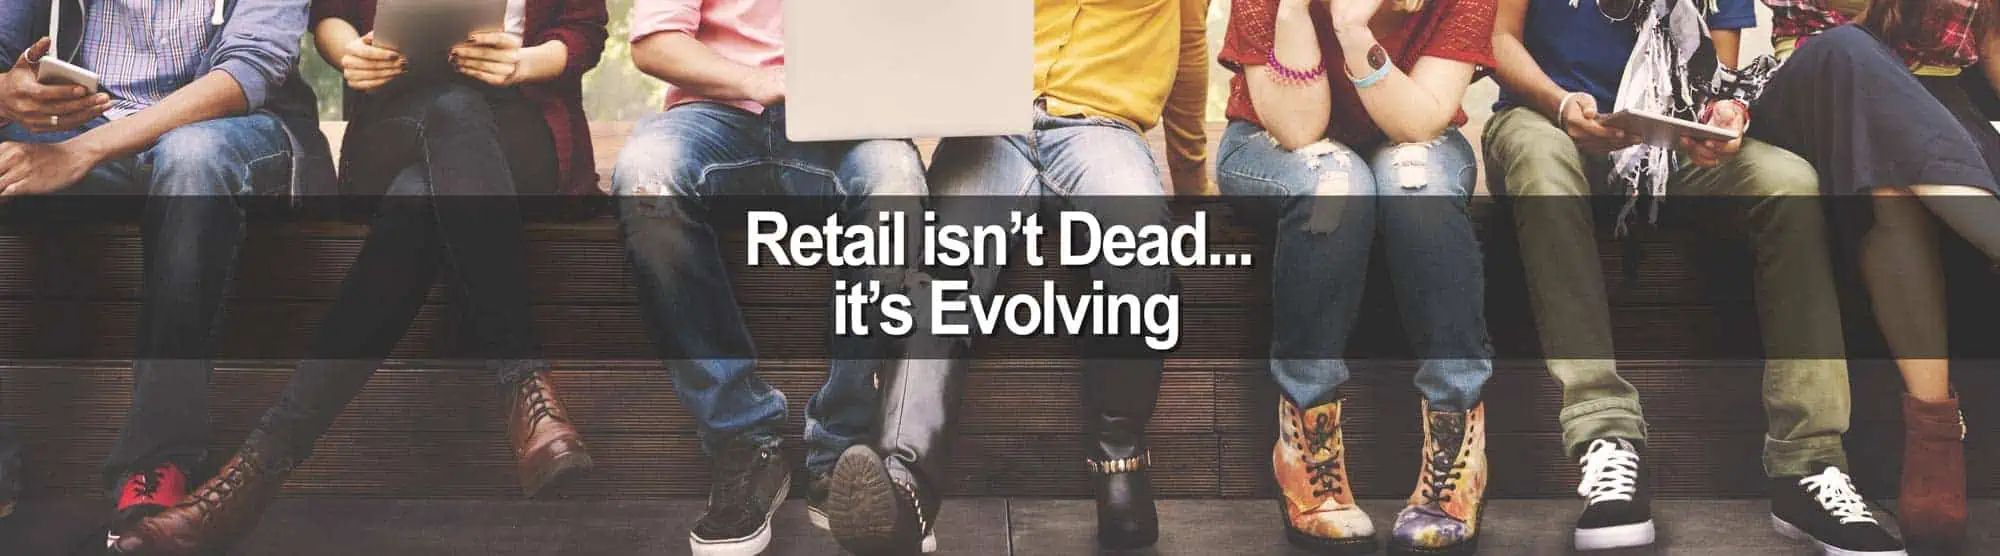 Millennials cause retail to evolve